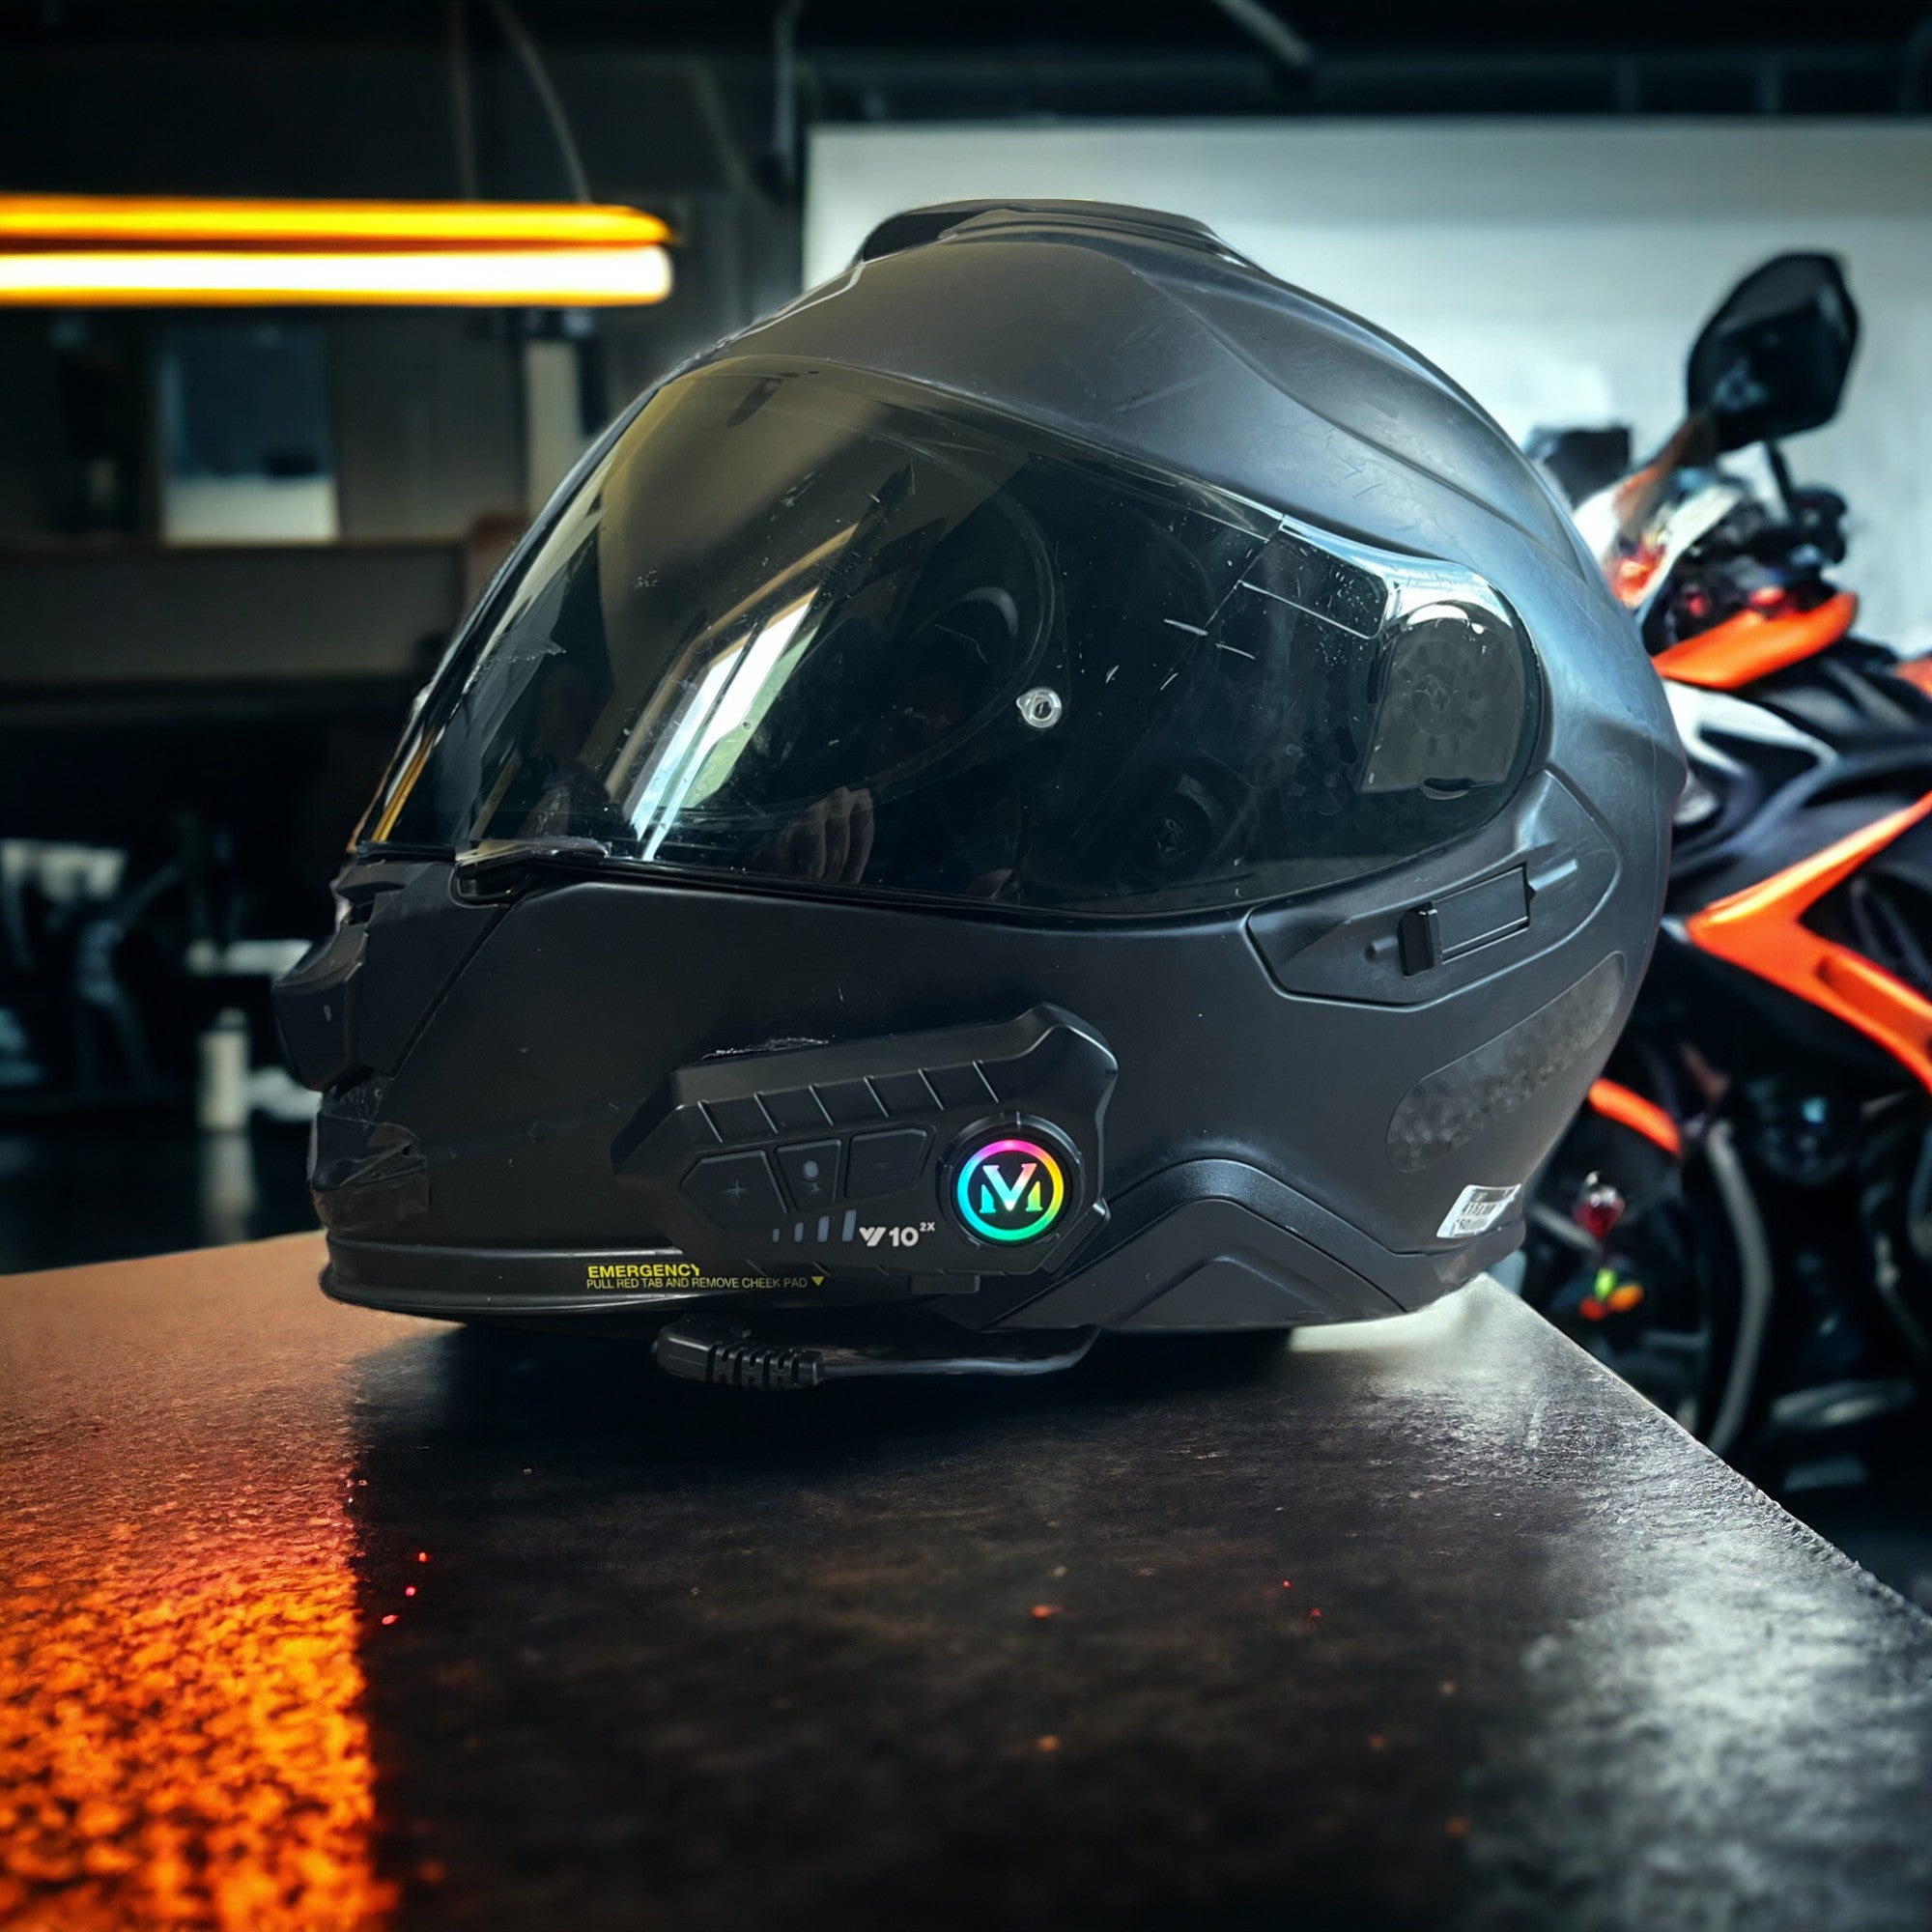 Motarcom - L'intercom moto haut de gamme et abordable